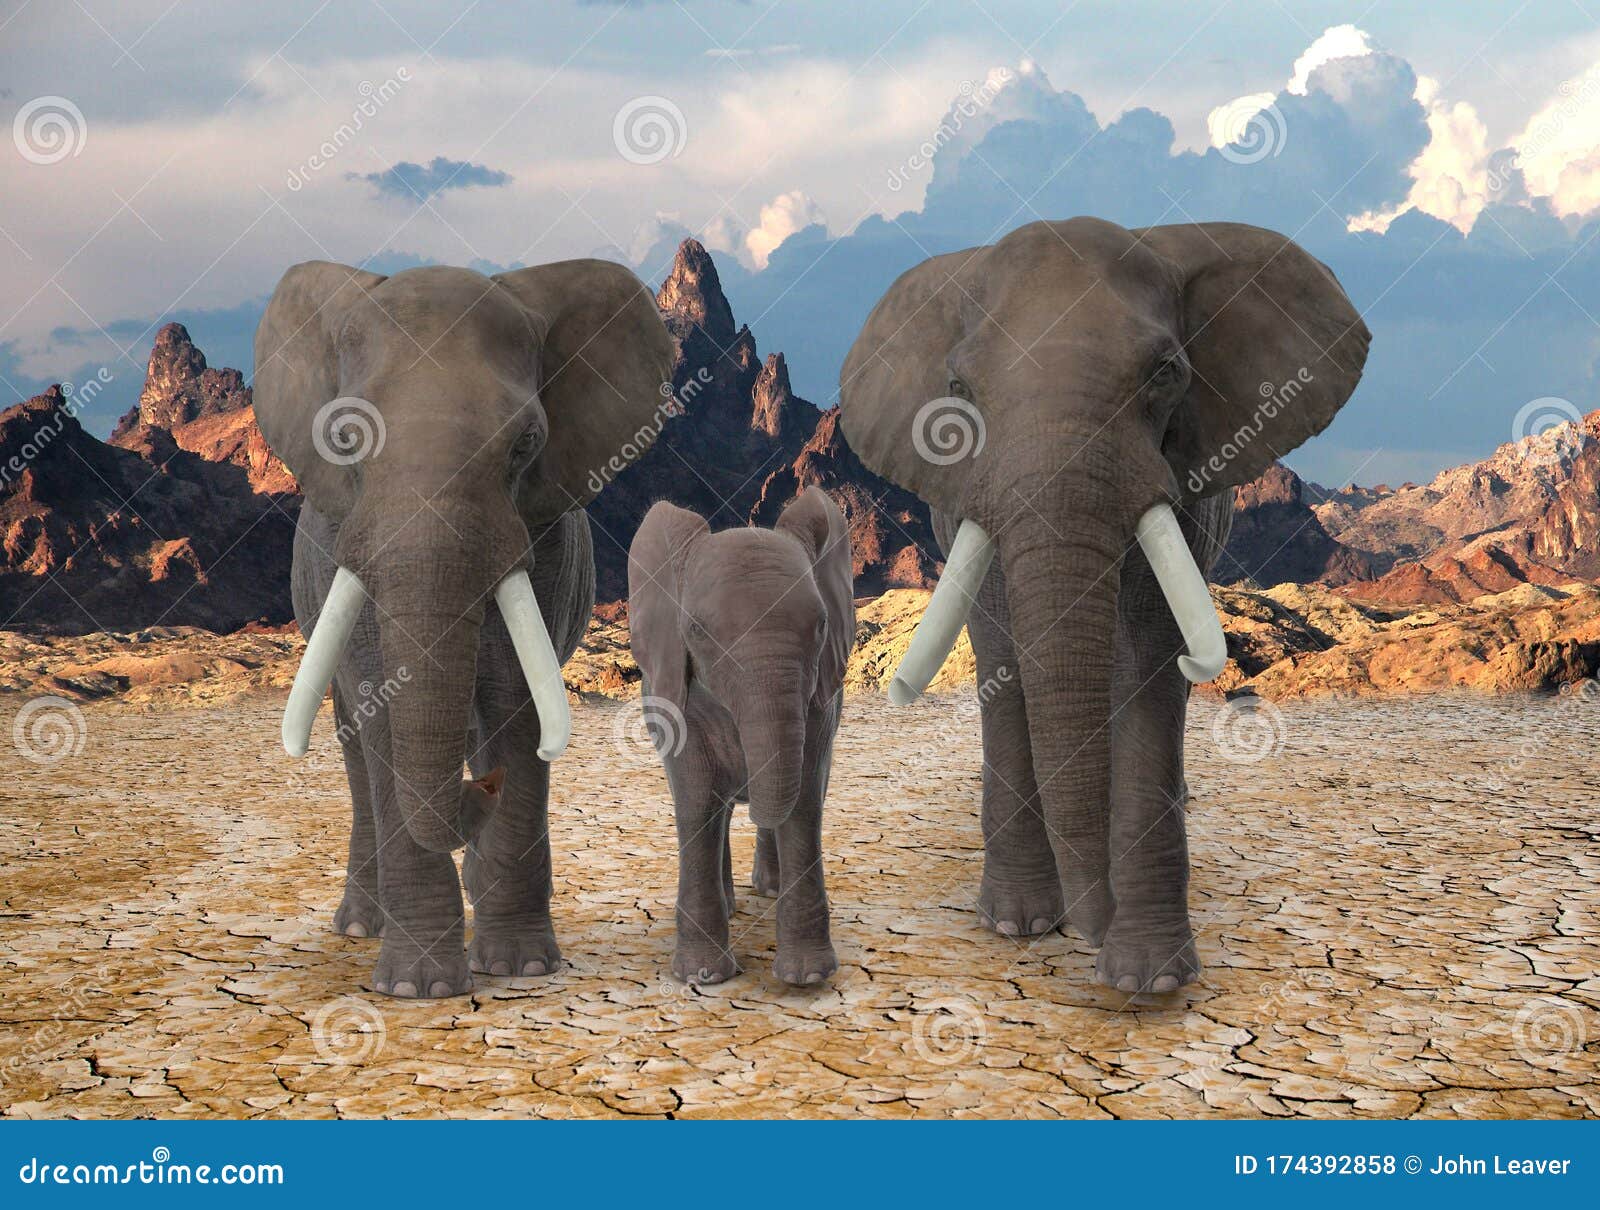 3 Elephants Walking Towards The Camera Stock Photo Image Of Walk Wildlife